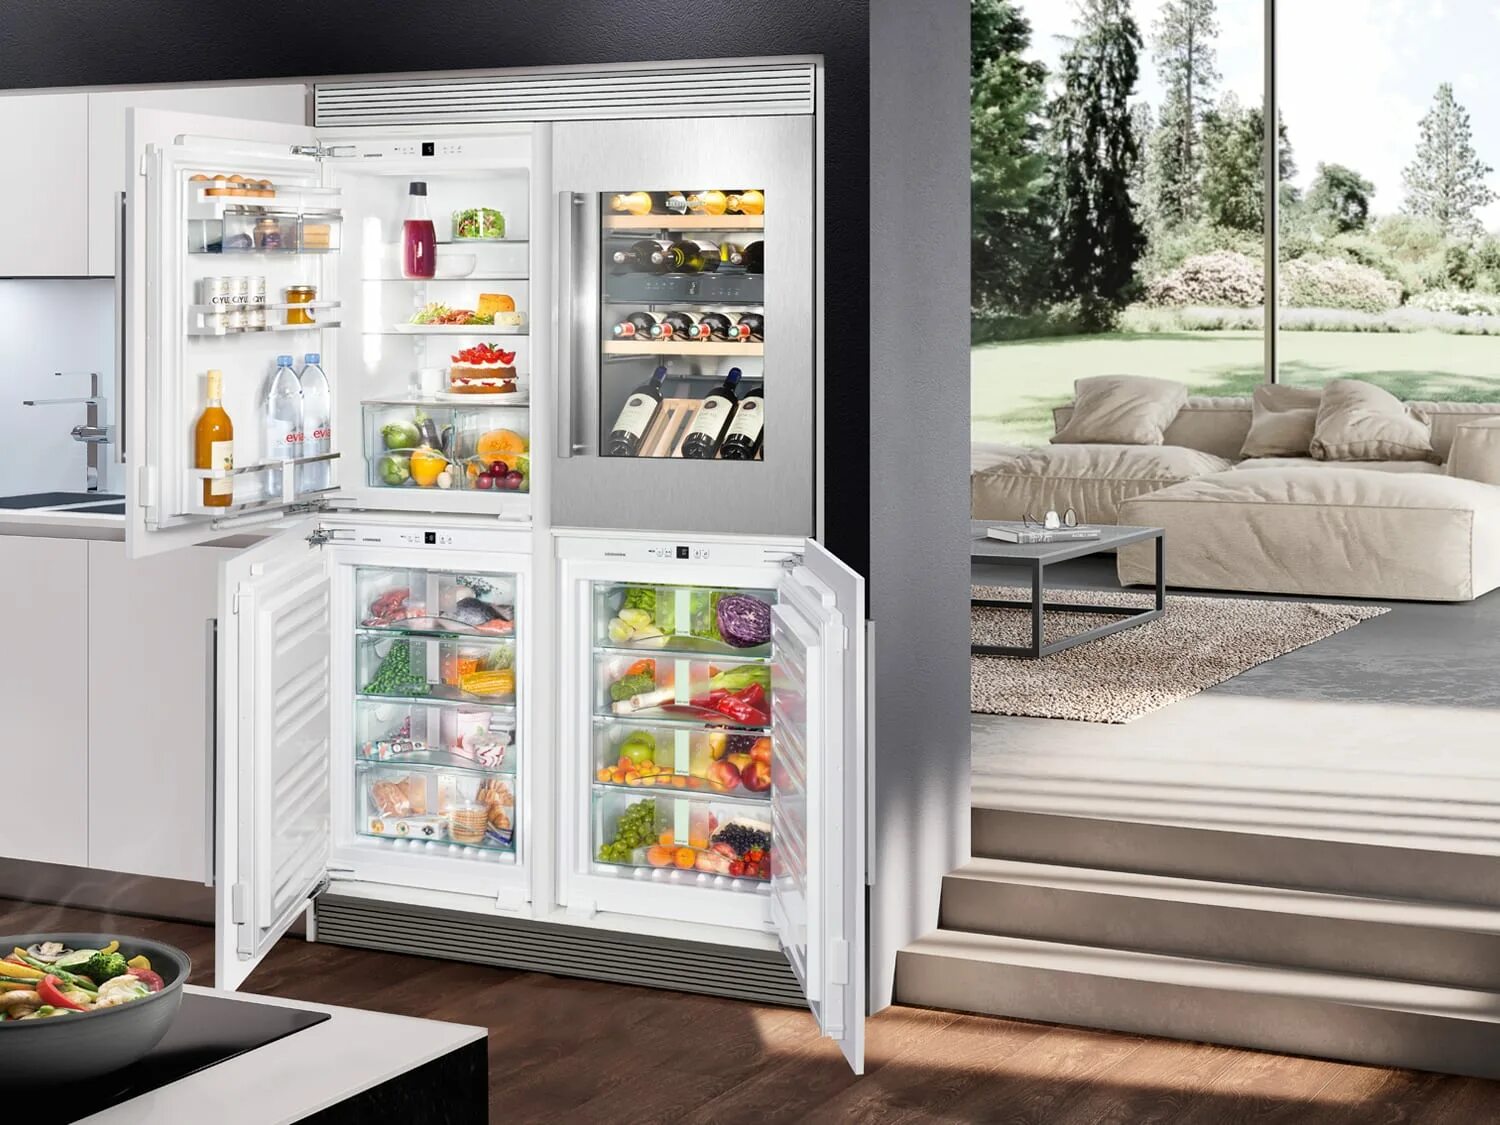 Холодильник Либхер двухдверный. Холодильник Liebherr Side by Side. Холодильник Либхер с винным шкафом. Встраиваемый холодильник Liebherr с зоной свежести. Какие встроенные холодильники лучше